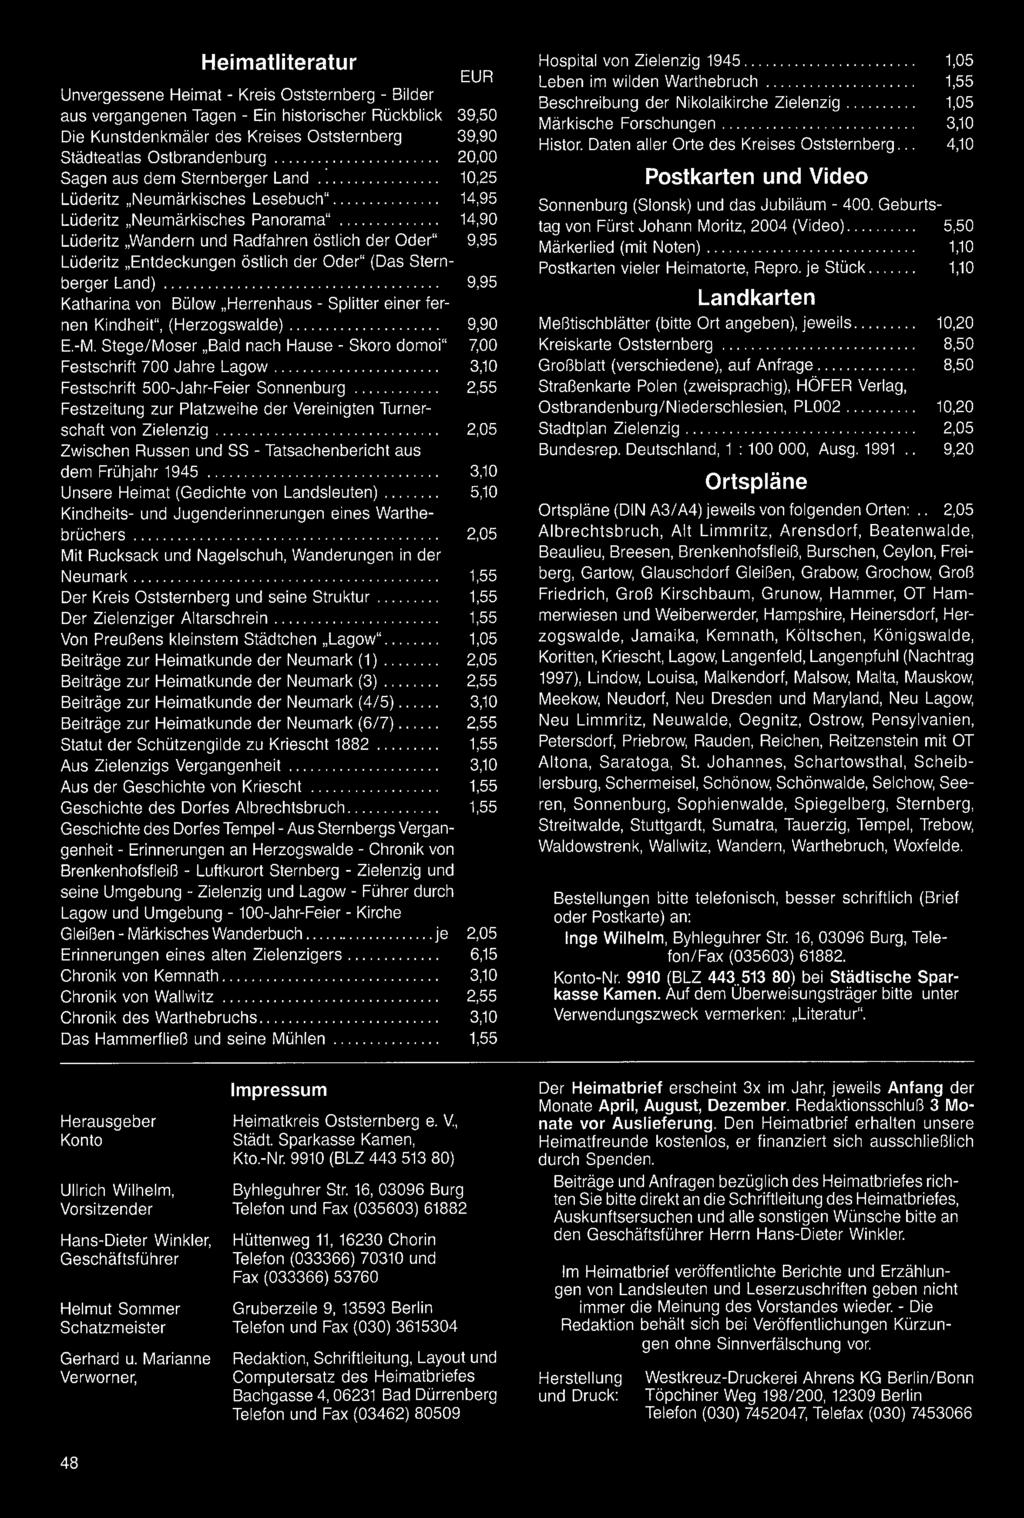 Zwischen Russen und SS - Tatsachenbericht aus dem Frühjahr 1945 3,10 Unsere Heimat (Gedichte von Landsleuten) 5,10 Kindheits- und Jugenderinnerungen eines Warthebrüchers 2,05 Mit Rucksack und